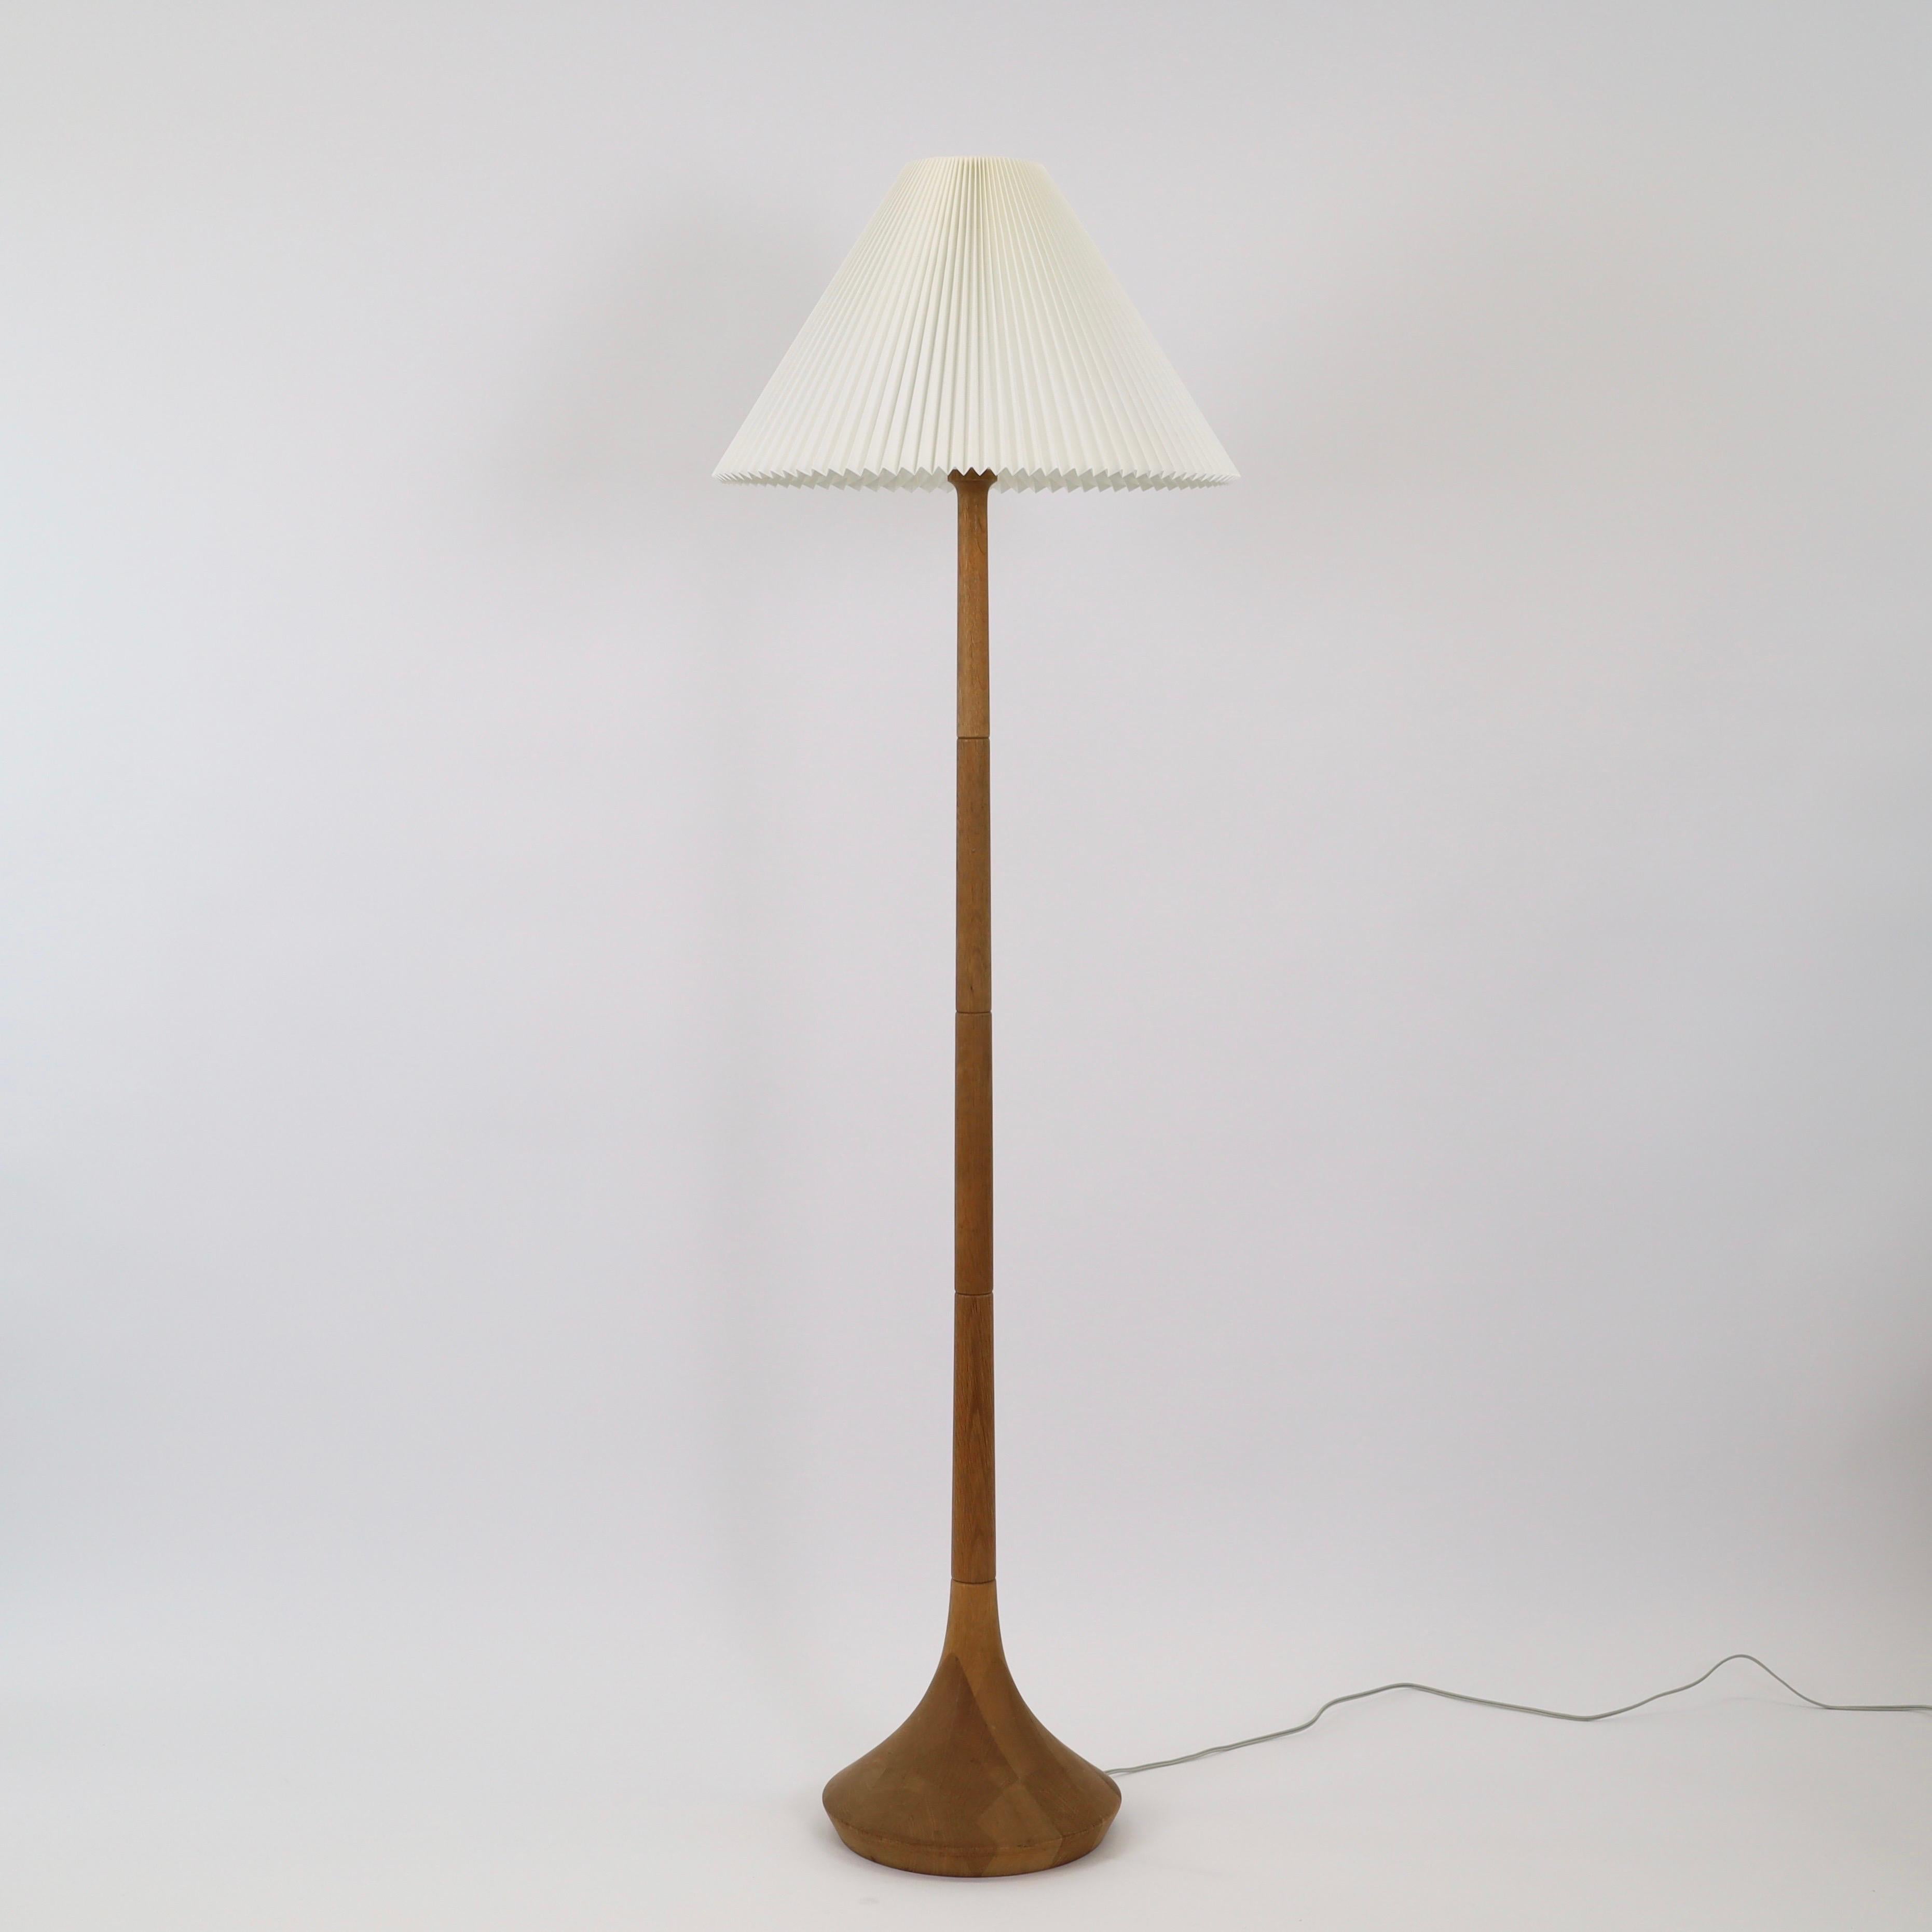 Lampadaire en bois de chêne conçu par Lisbeth Brams pour Brdr. Krüger dans les années 1960 avec un abat-jour de Le Klint. Une pièce moderne de la designer danoise et un exemple de son extraordinaire capacité à créer des lampes intemporelles. 

*